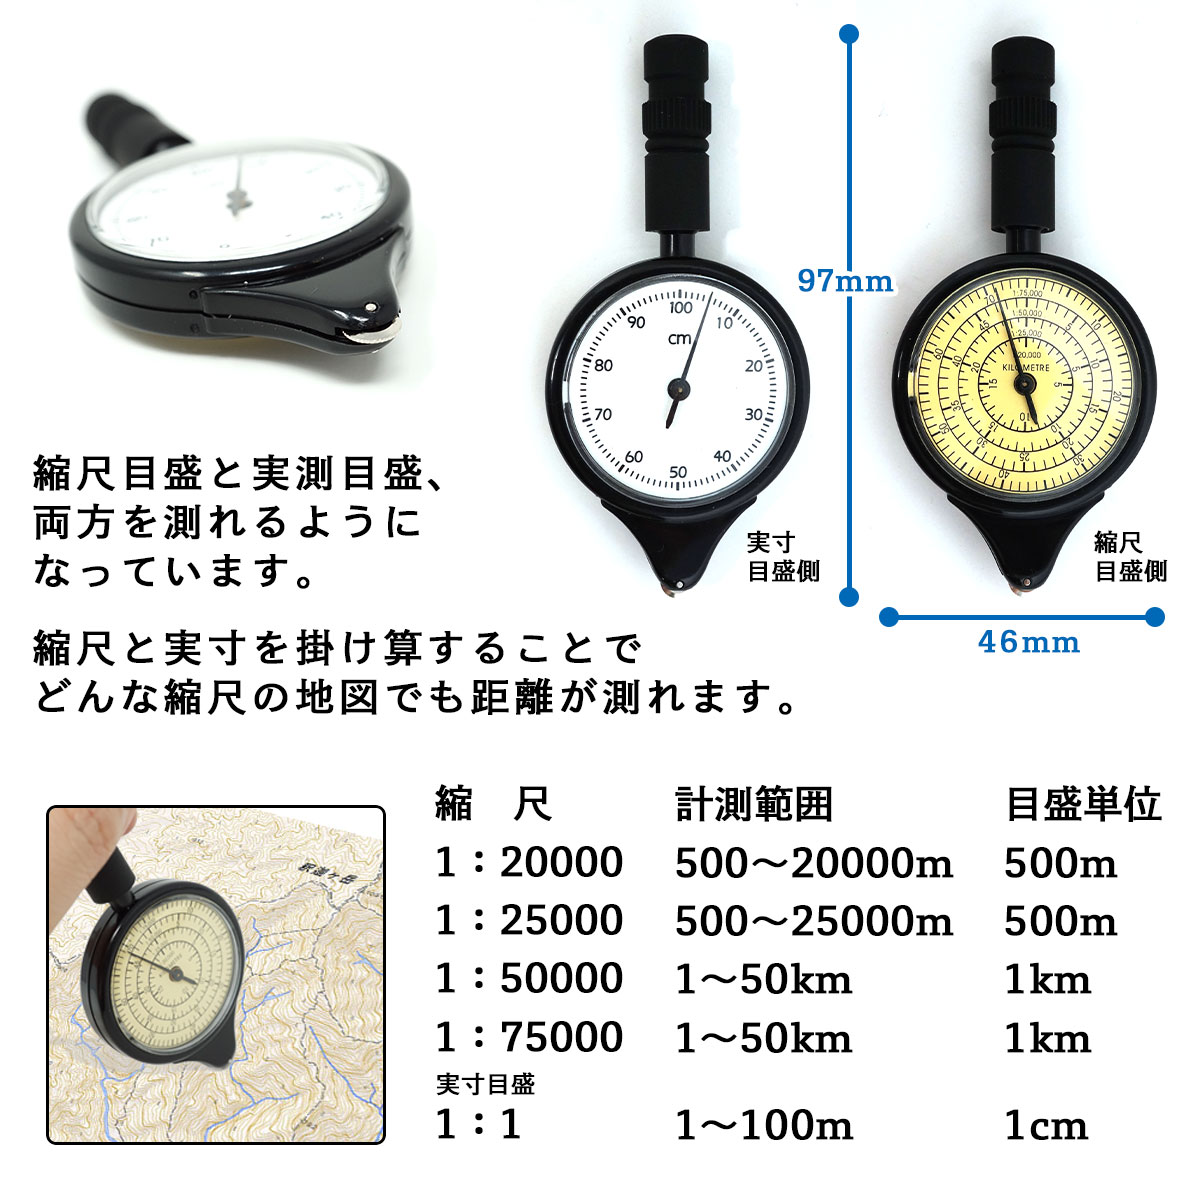 楽天市場 本日ポイント5倍 マップメジャー 地図の距離計測に 東京道具商会